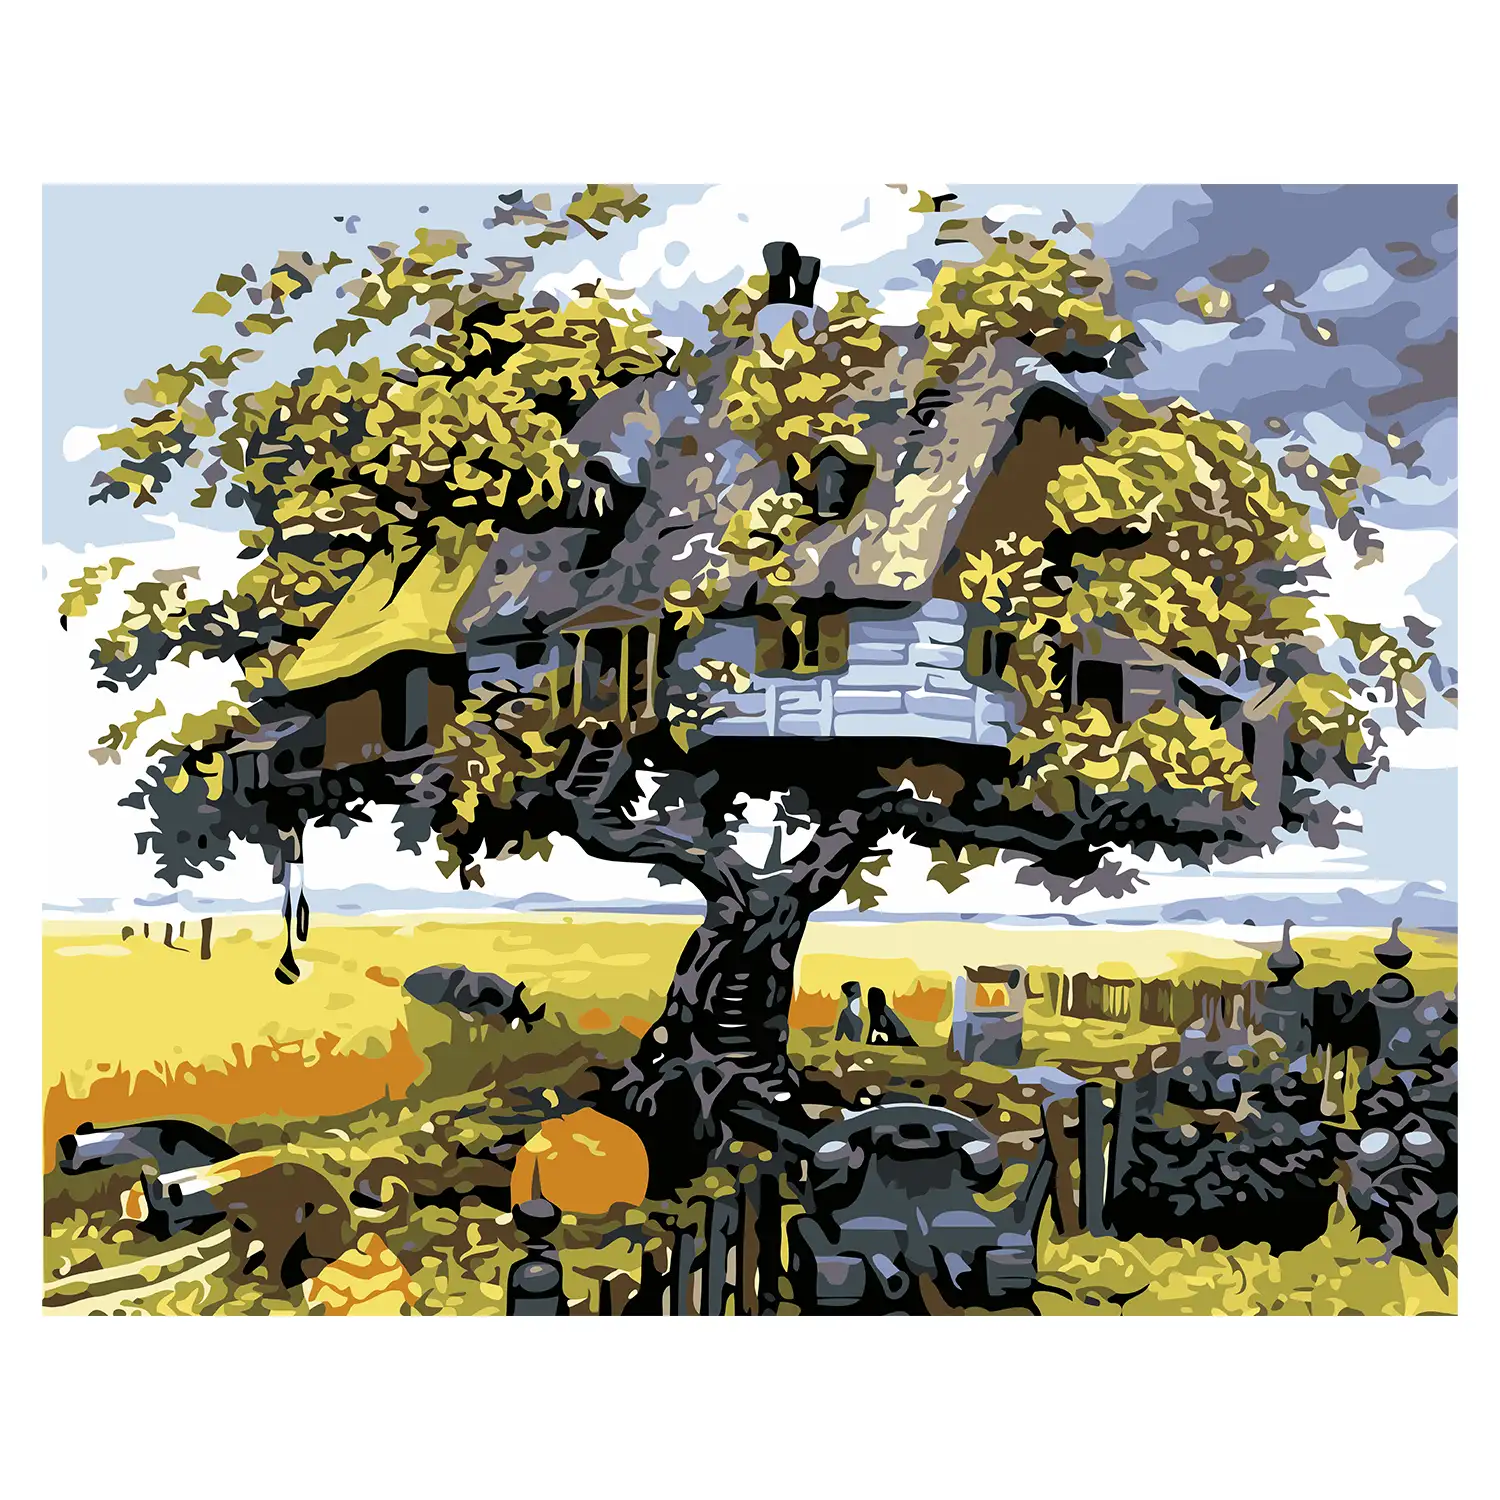 Lienzo con dibujo para pintar con números, de 40x50cm. Diseño casa del árbol. Incluye pinceles y pinturas necesarias.